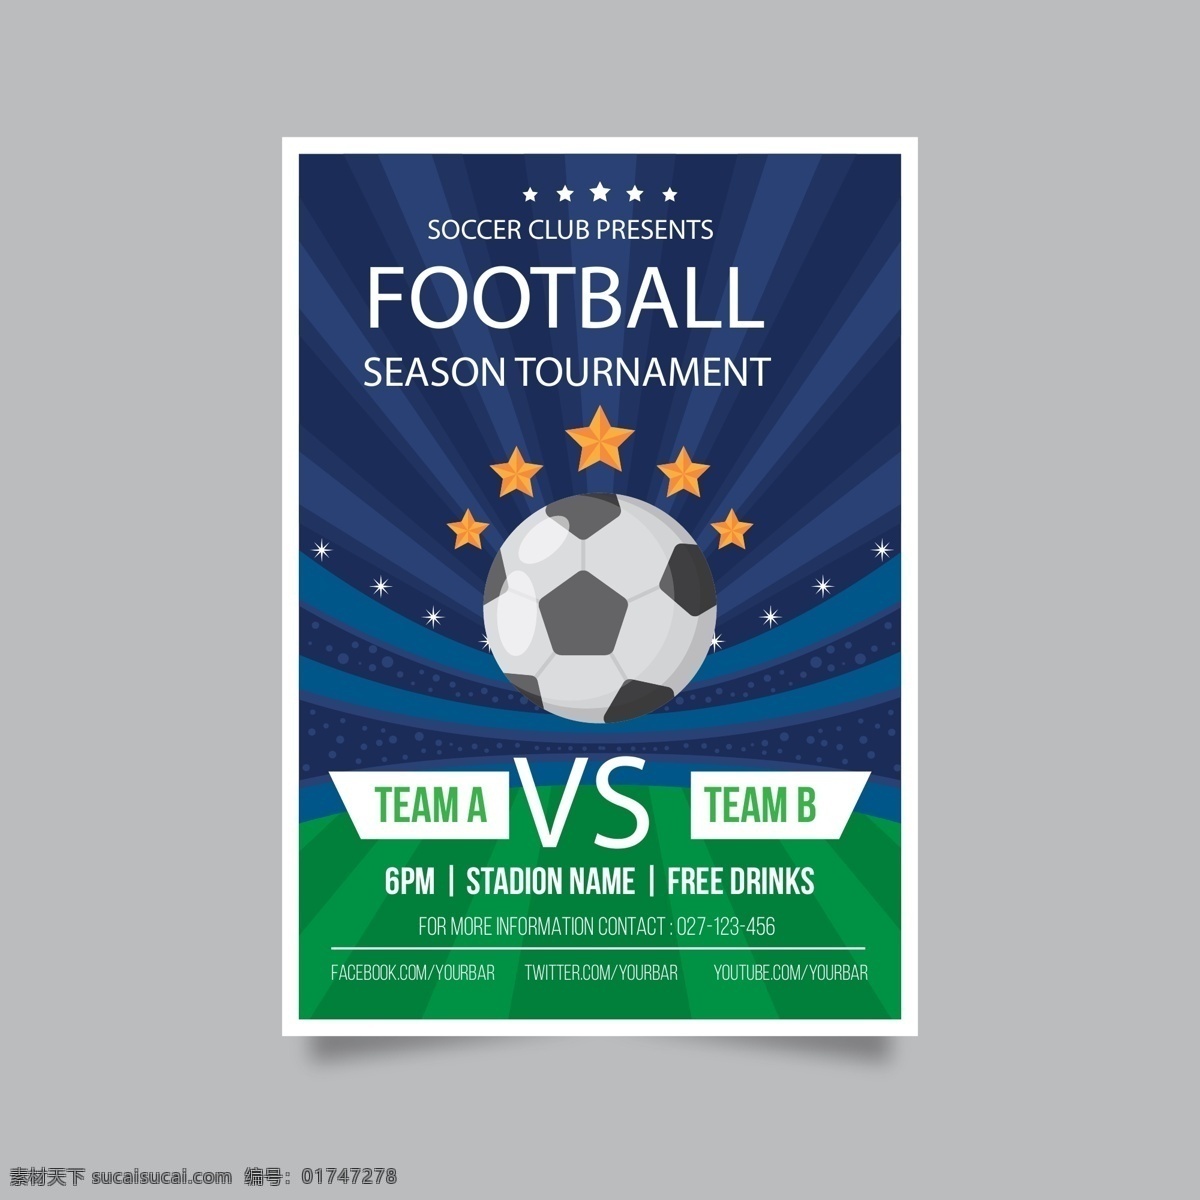 足球海报 足球 矢量足球 卡通足球 手绘足球 足球插画 2018 世界杯 灯光璀璨 五角星 足球比赛 体育用品